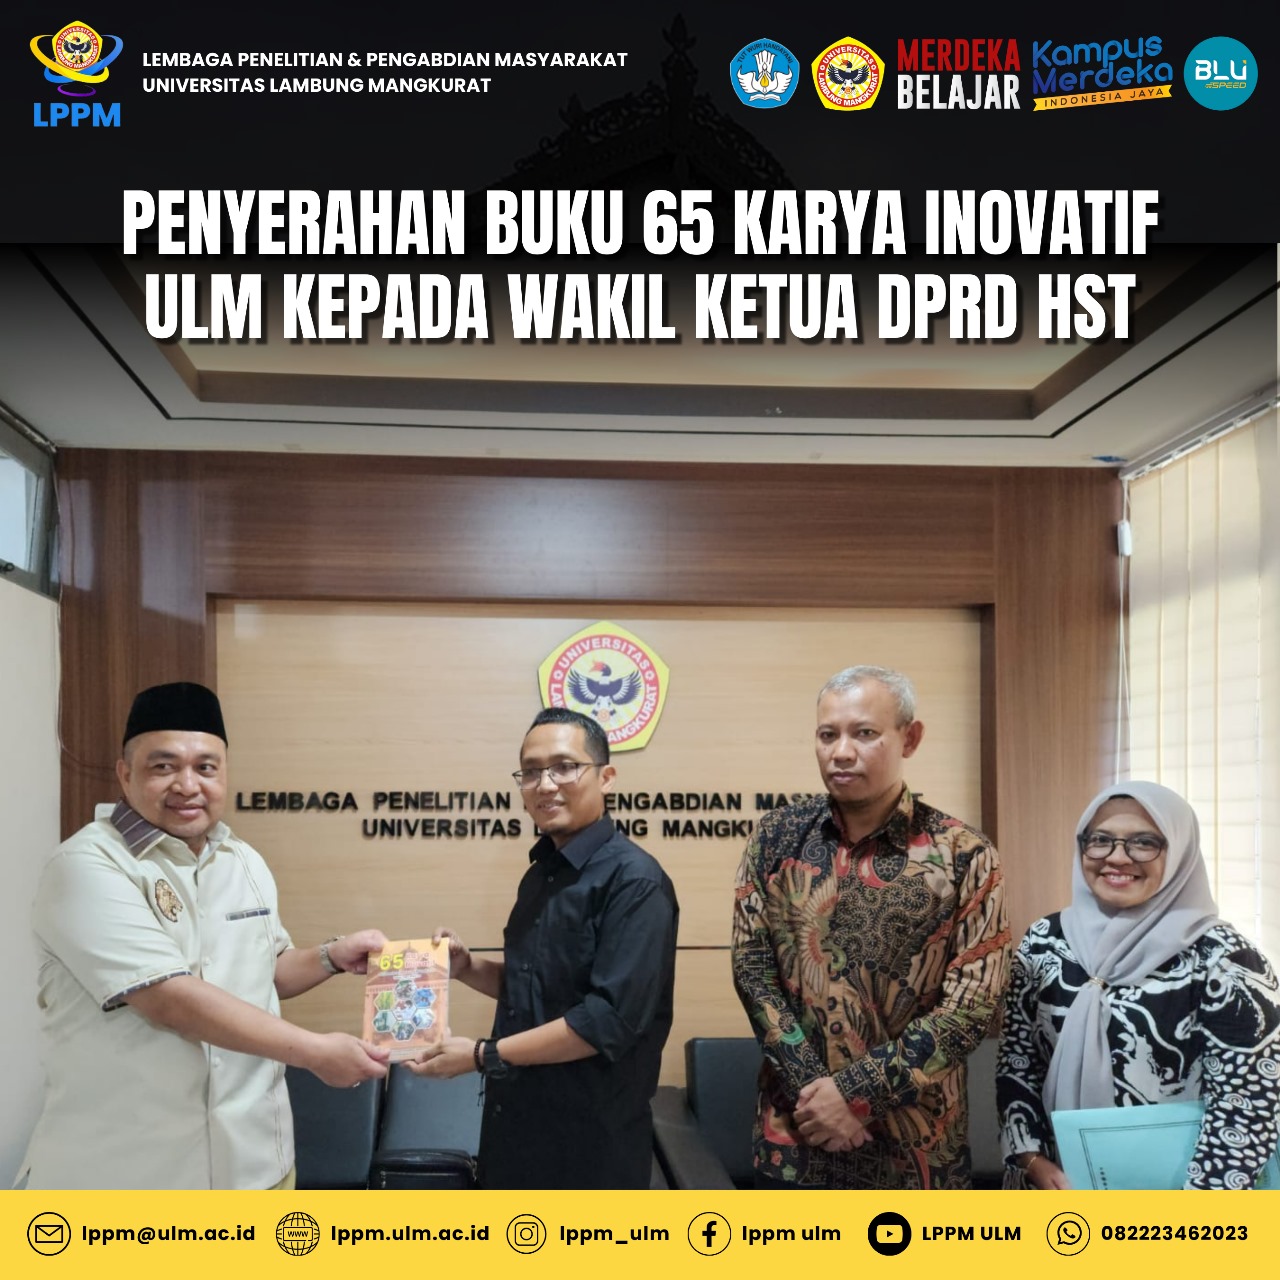 Gambar Penyerahan Buku 65 Karya Inovatif ULM Kepada Wakil Ketua DPRD HST